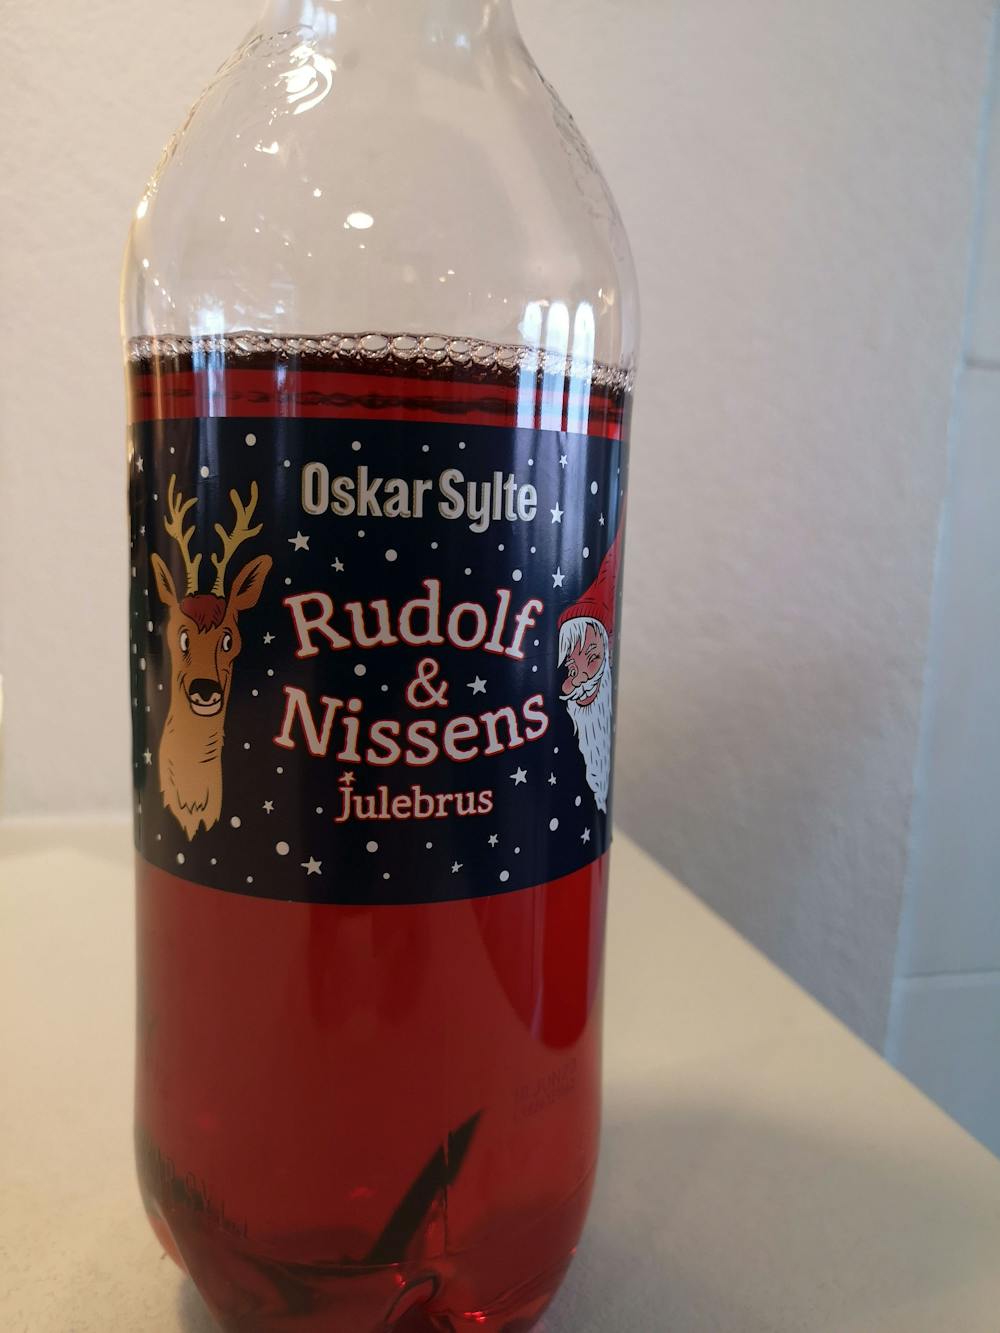 Rudolf & nissens julebrus, Oskar Sylte